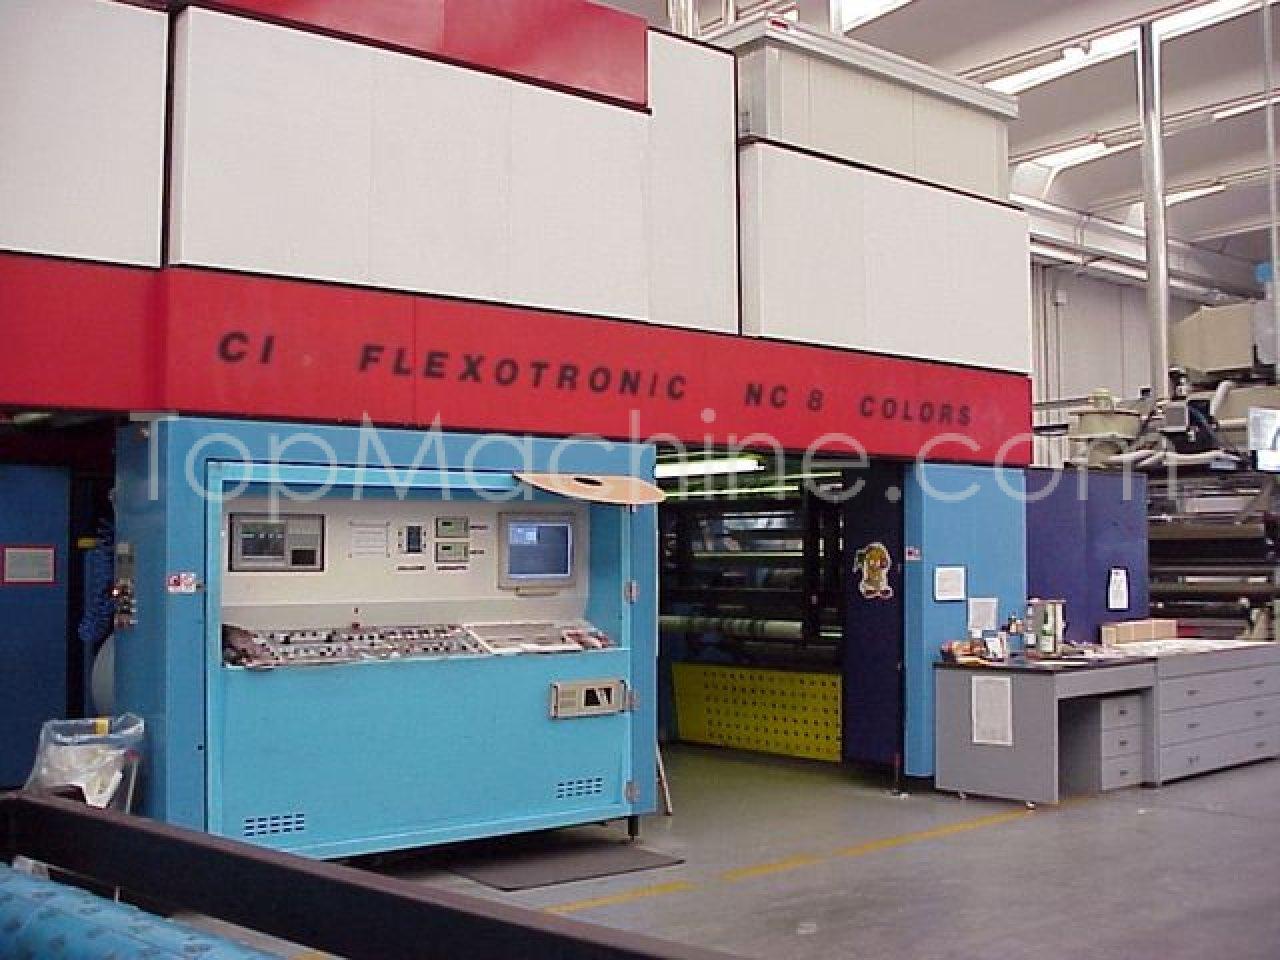 Used Multipress C.I. Flexotronic N.C. 1540-1200/8 Плёнка & Печать Флексопечатные с центральным барабаном